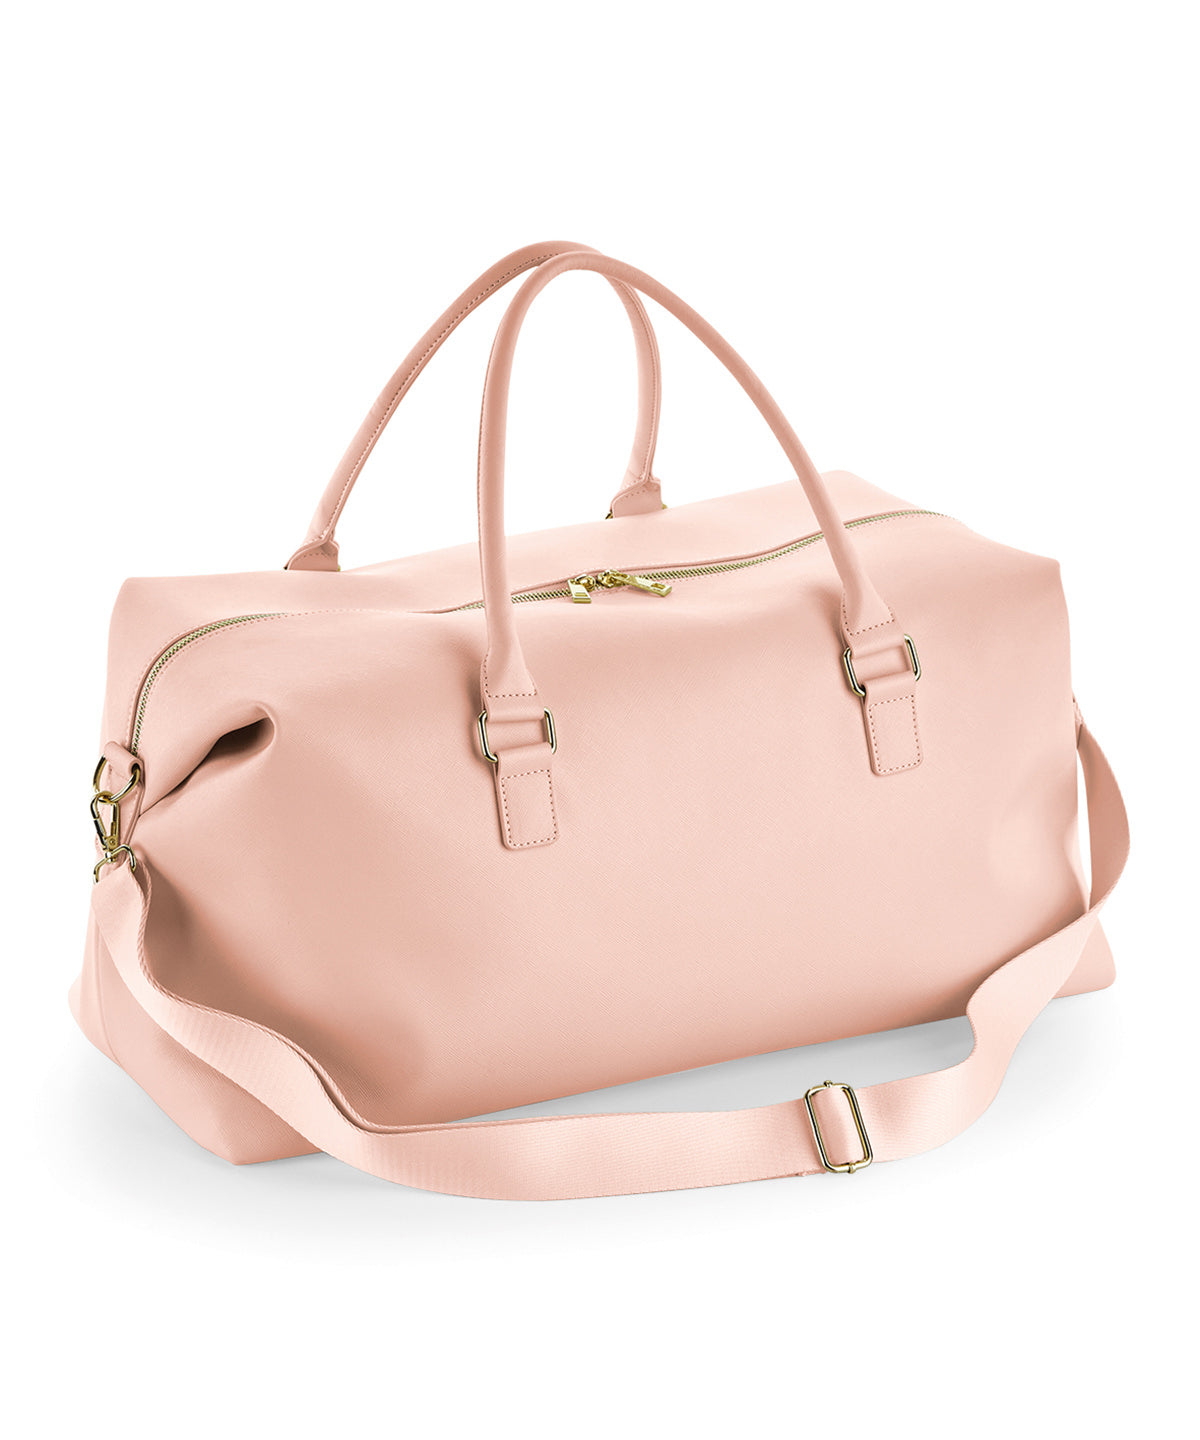 Personalised Bags - Light Brown Bagbase Boutique weekender